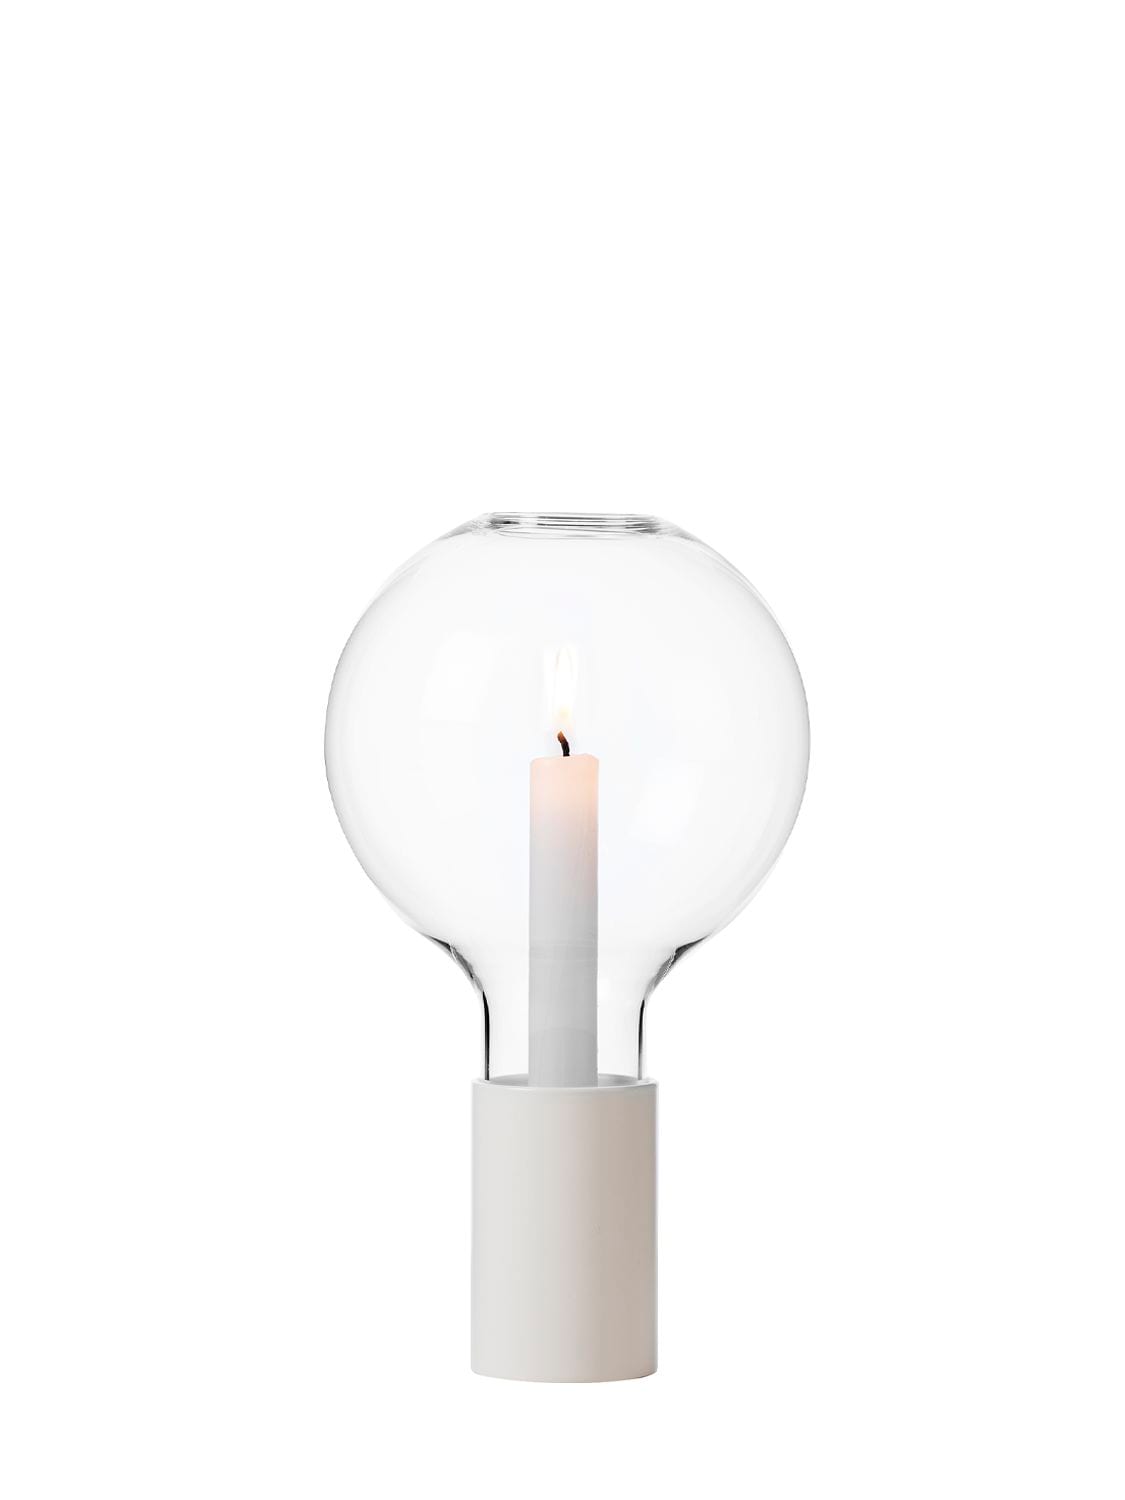 Davide Groppi Light My Fire Table Lamp In White